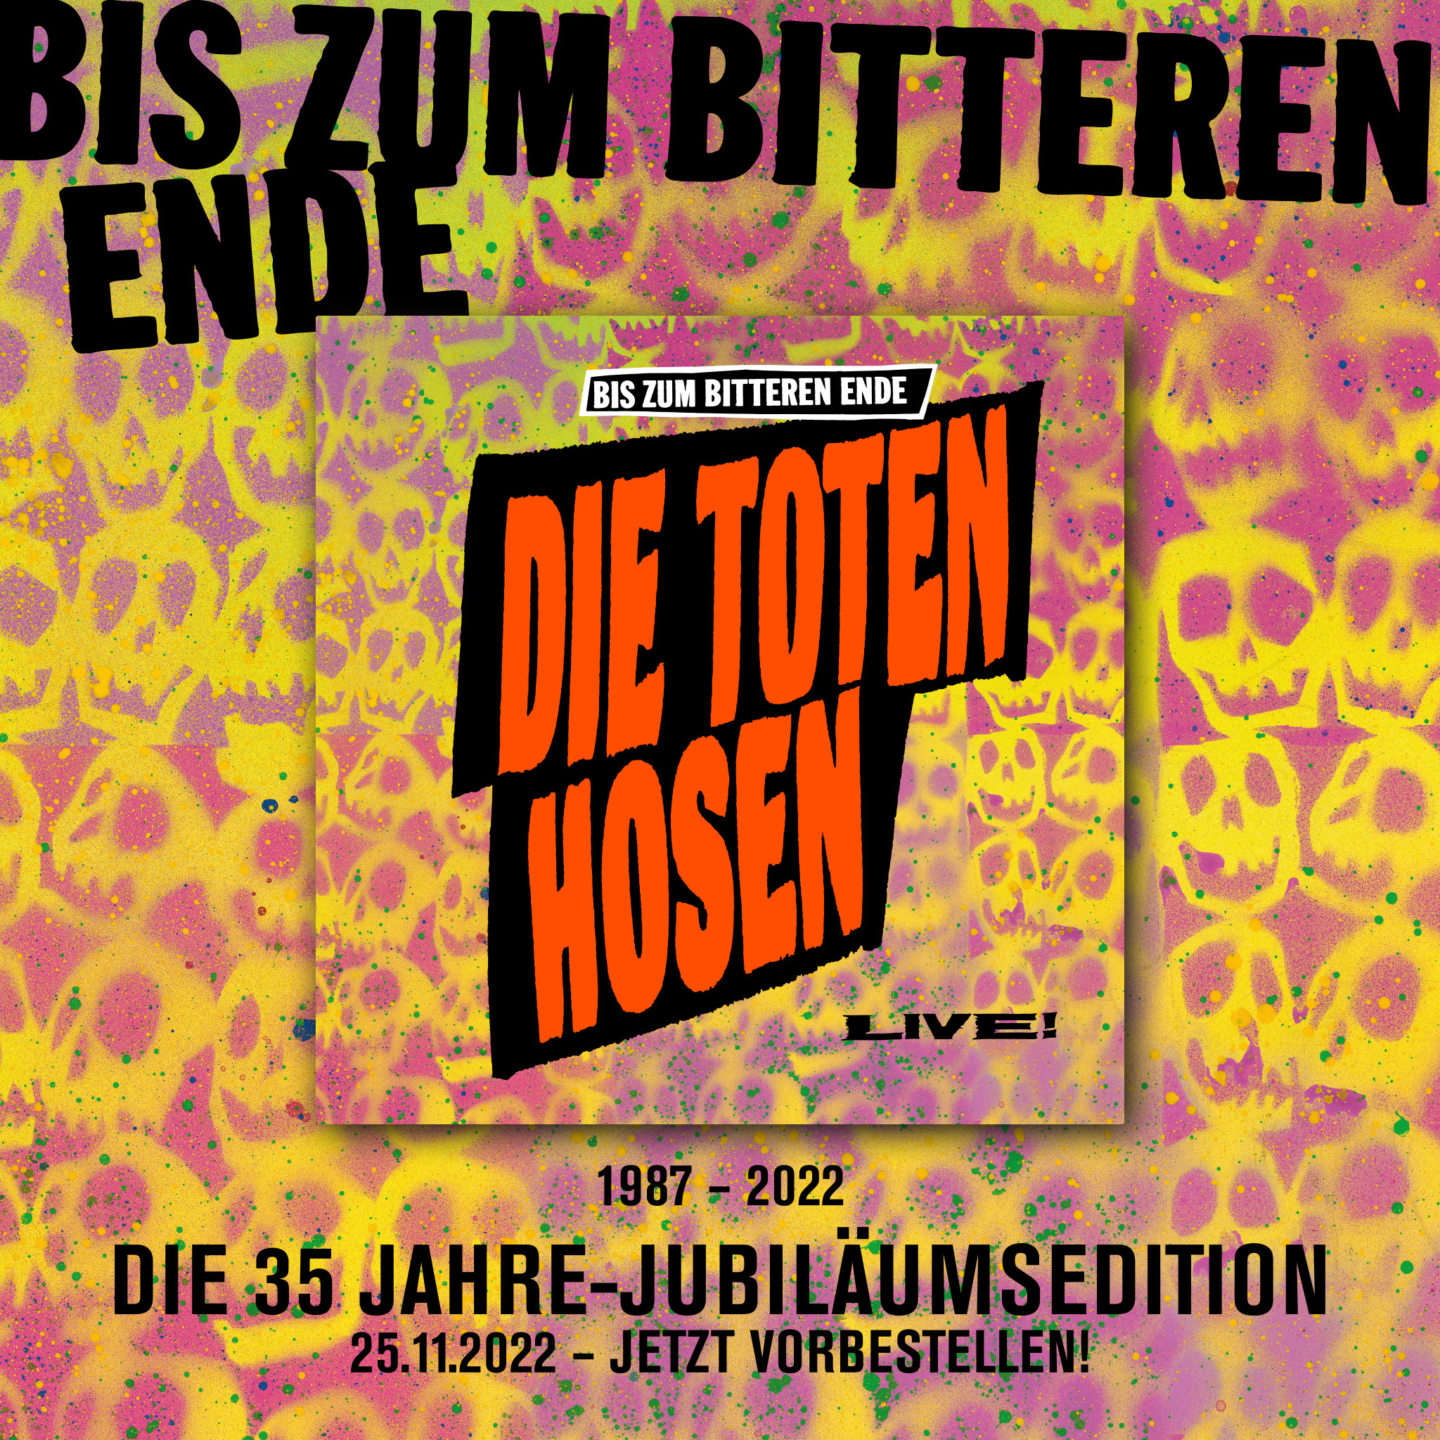 "BIS ZUM BITTEREN ENDE – DIE TOTEN HOSEN LIVE!: 1987 - 2022 / Die 35 Jahre-Jubiläumsedition"